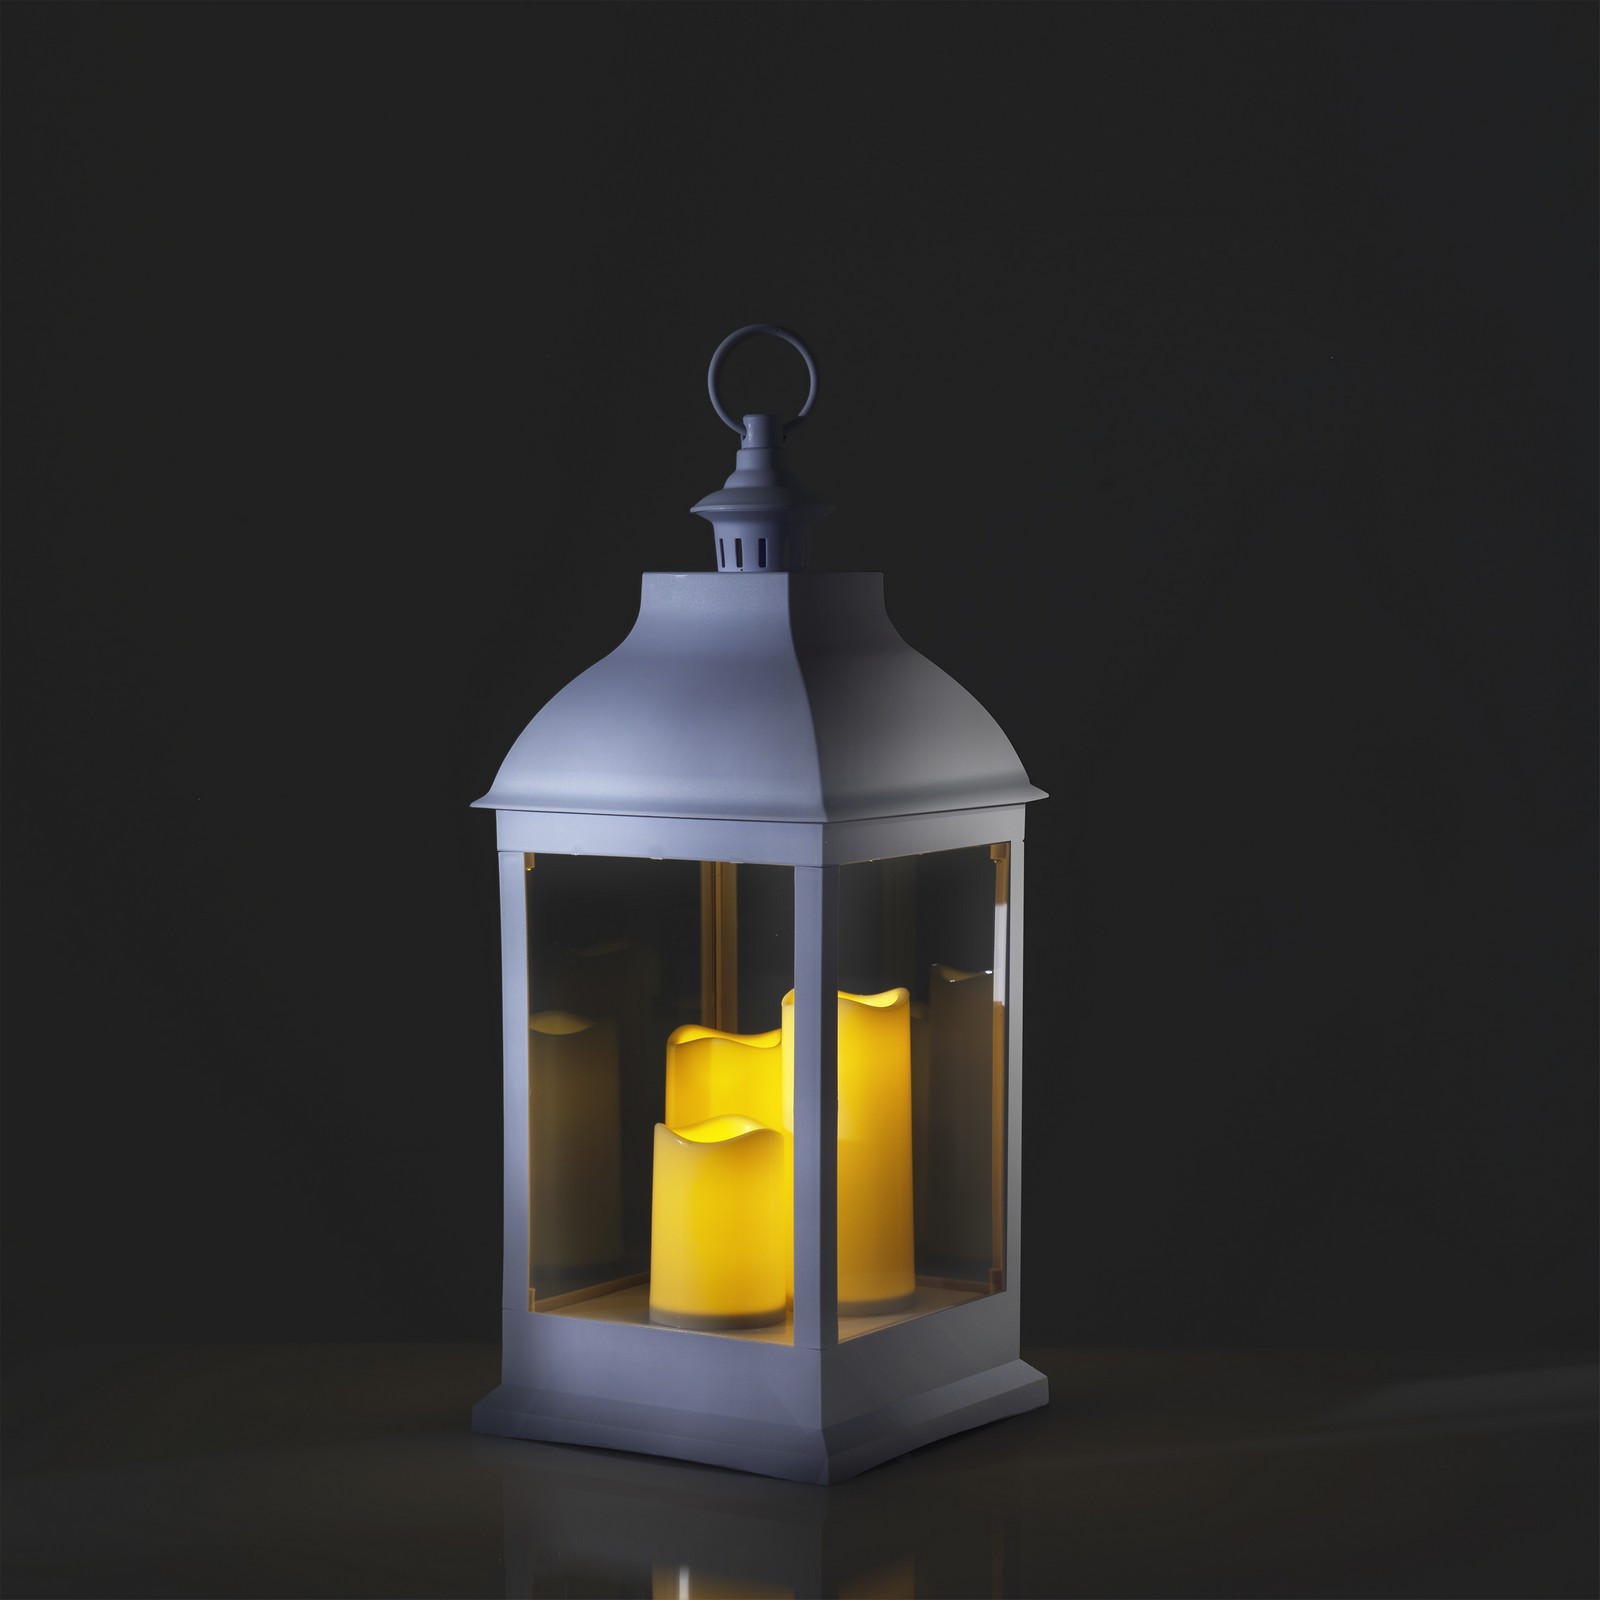 Lampada Decorativa LED Tina in plastica Bianca, 23.5x23.5 h54 cm